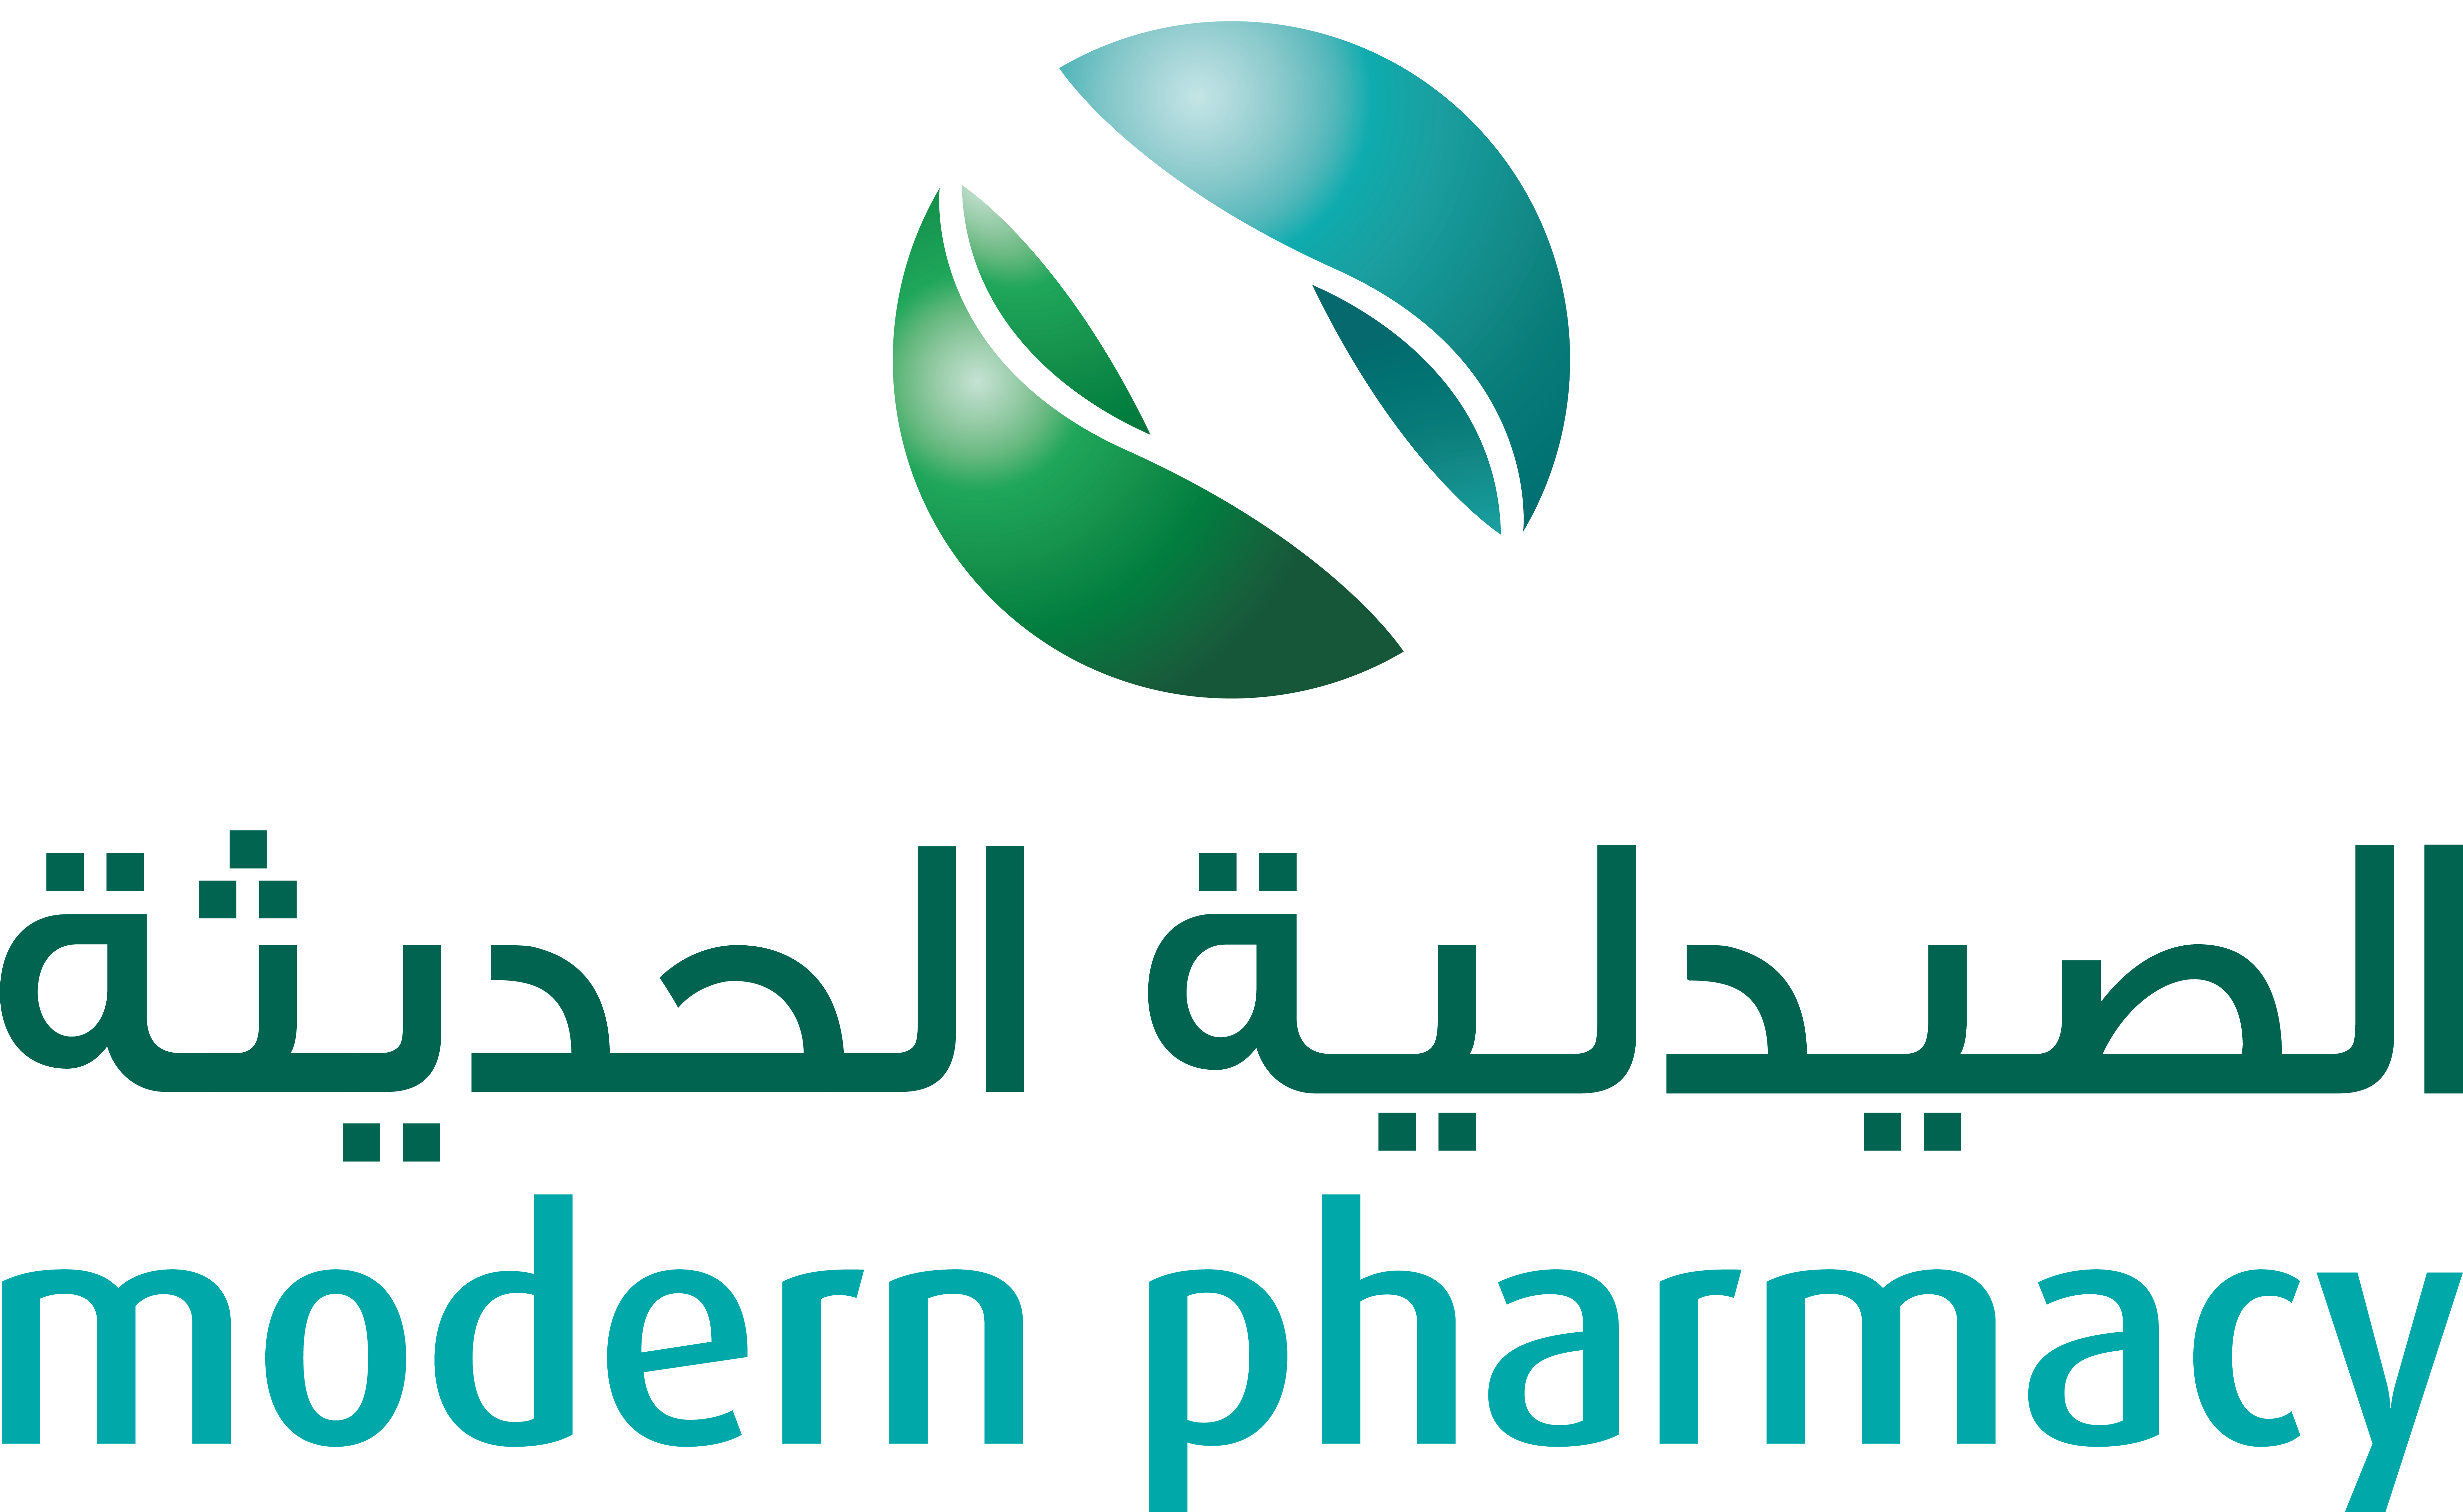 Modern Pharmacy - Deira Branch Logo